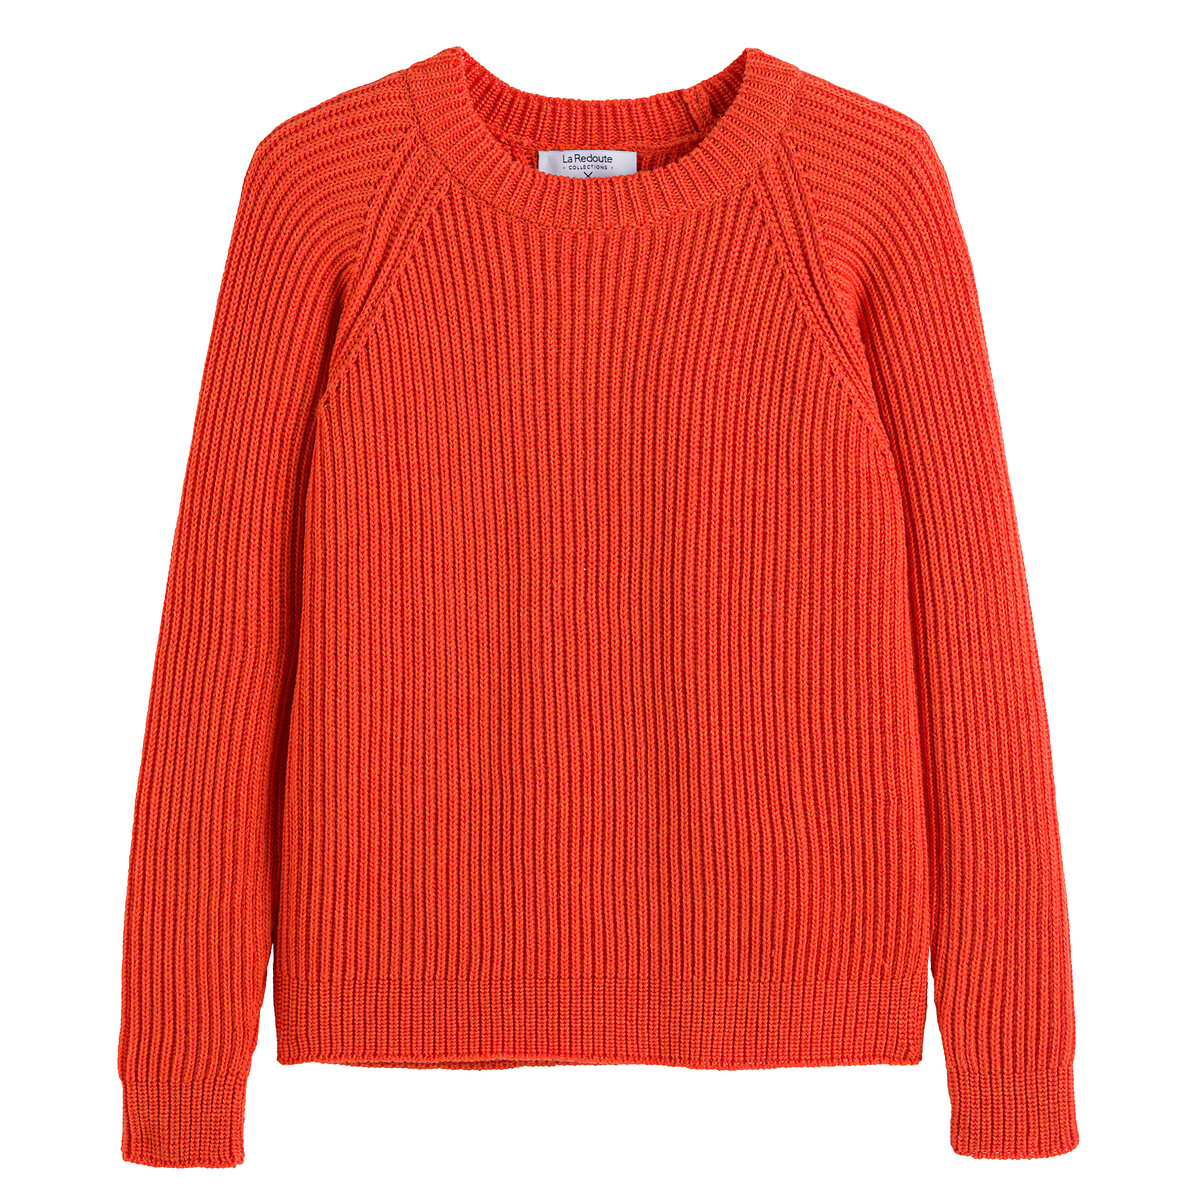 Пуловер Из шерсти мериноса сделано в Европе S оранжевый